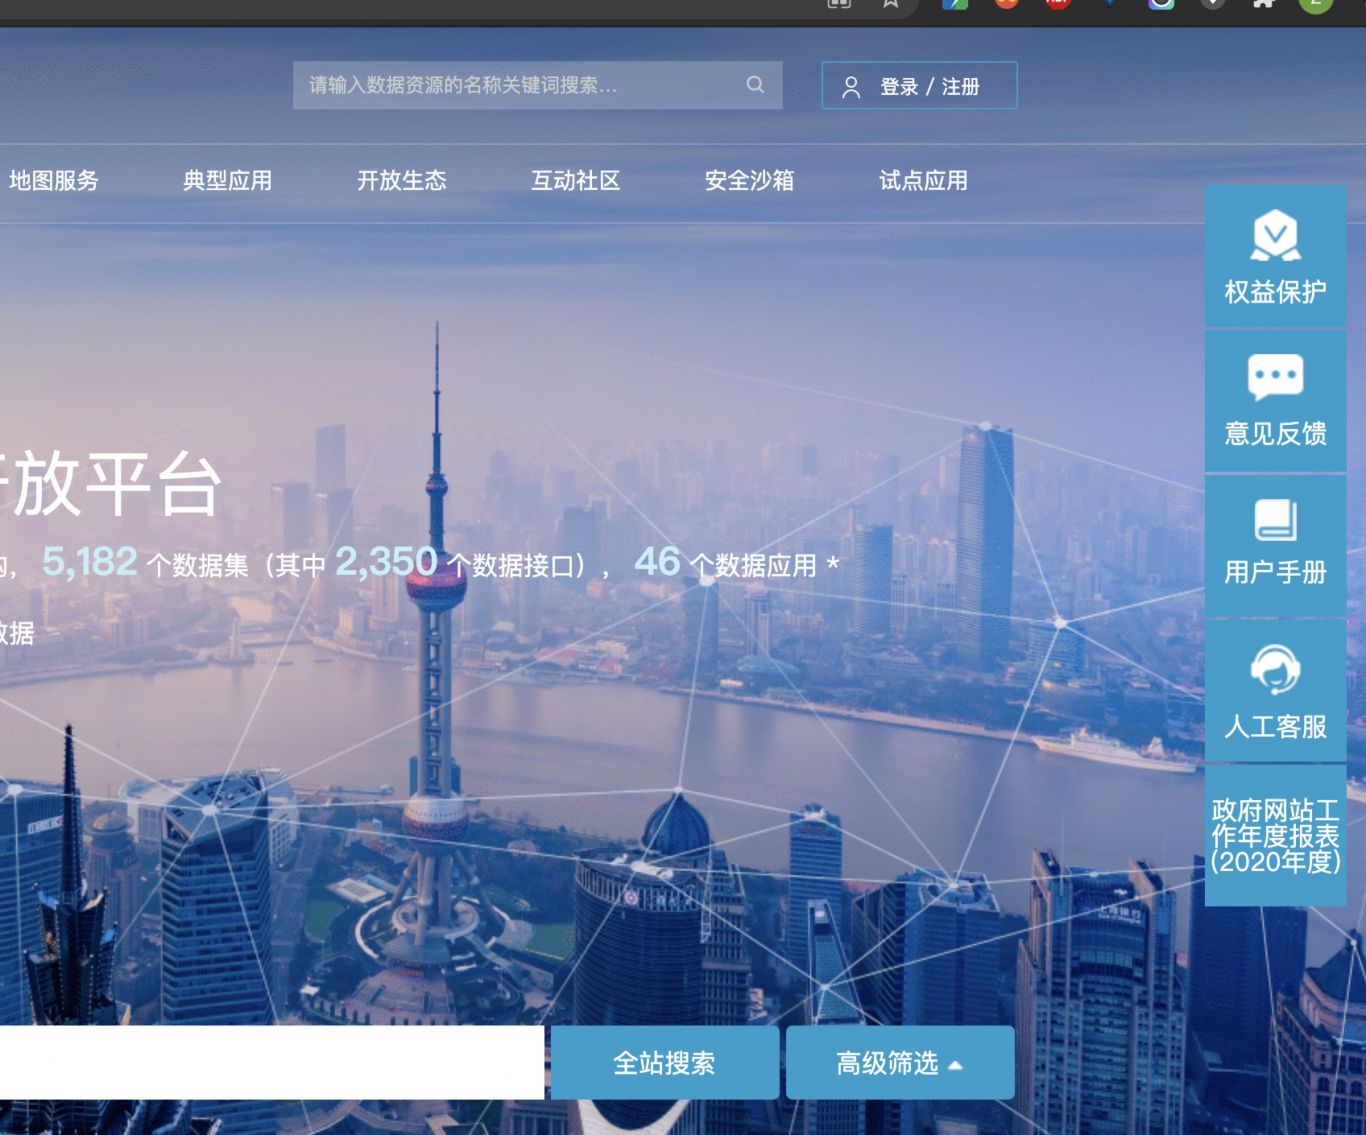 上海公共数据开放平台